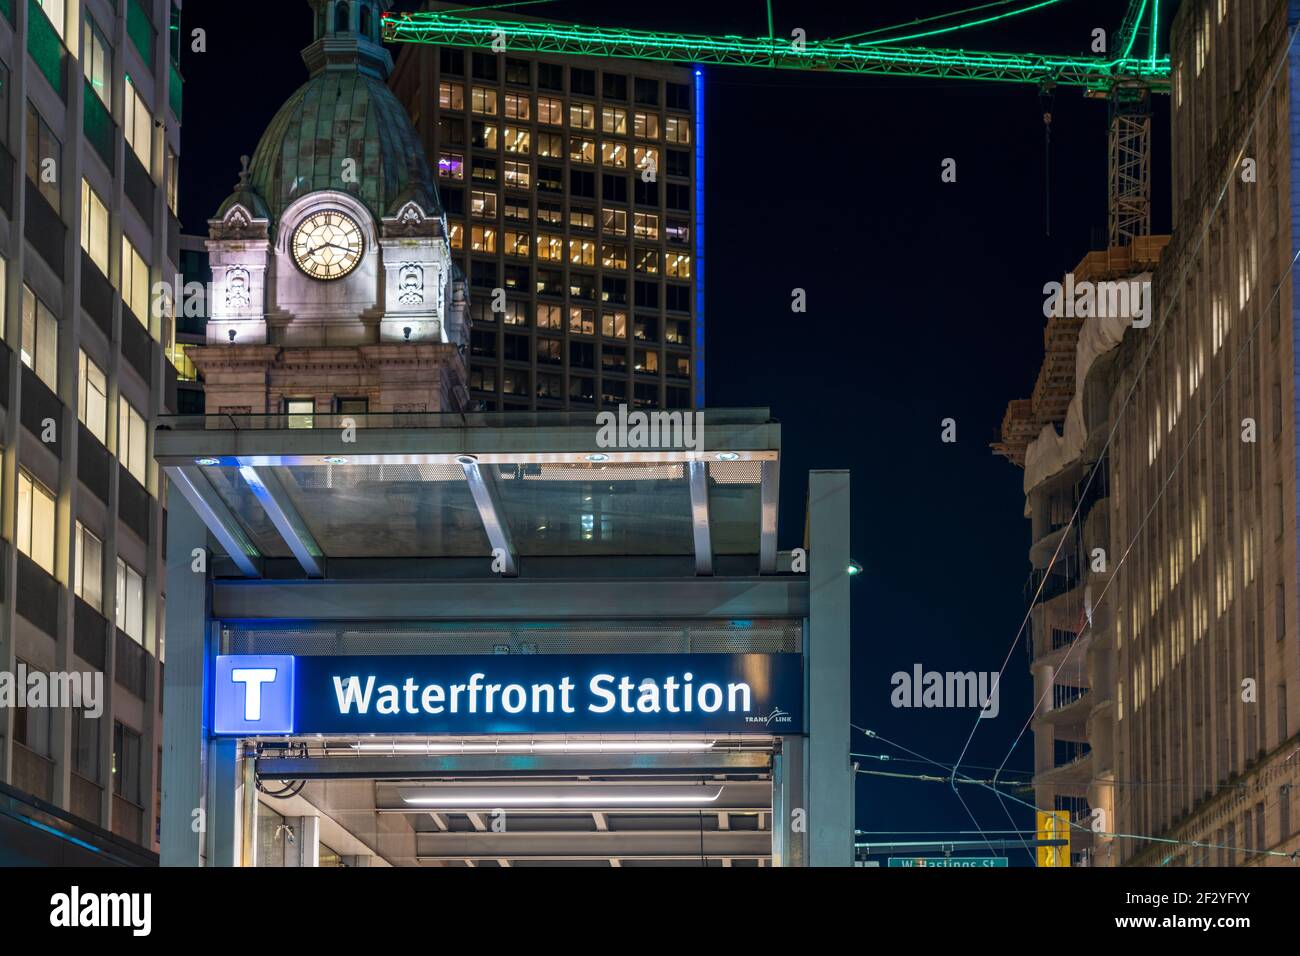 Vue de nuit sur la rue de la station de métro Waterfront sortie escalier roulant. Vancouver, Canada Banque D'Images